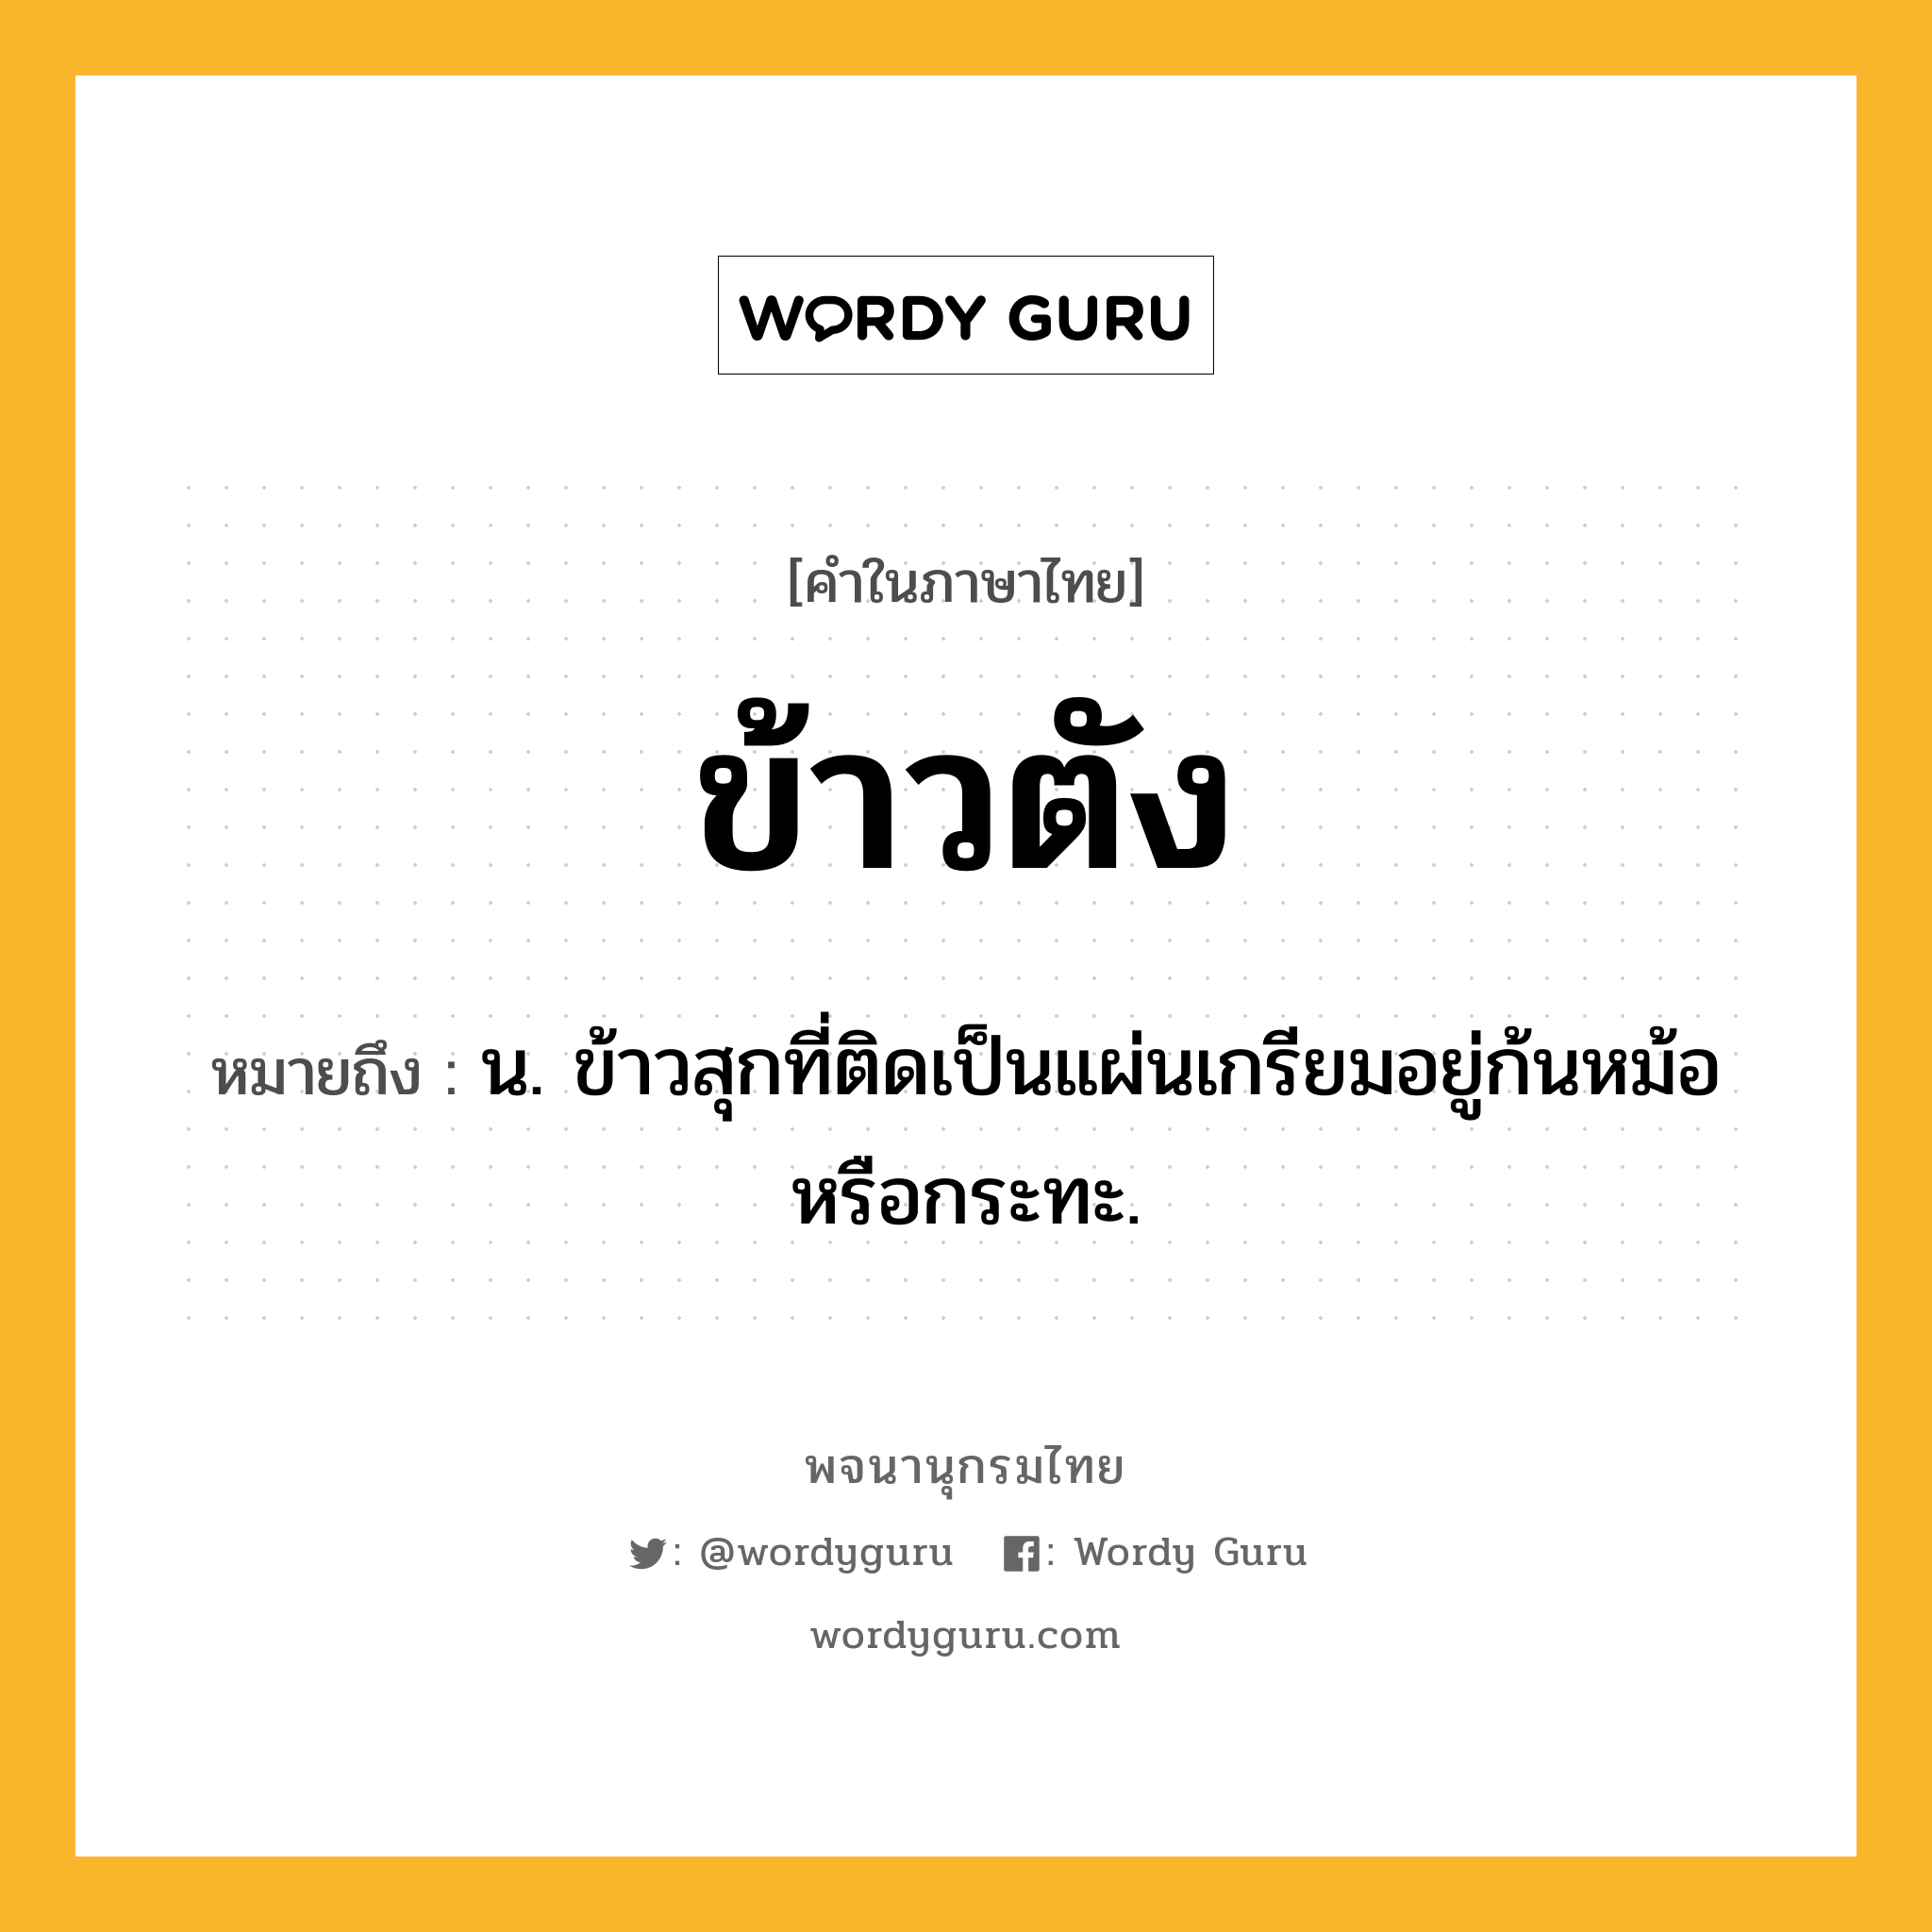 ข้าวตัง ความหมาย หมายถึงอะไร?, คำในภาษาไทย ข้าวตัง หมายถึง น. ข้าวสุกที่ติดเป็นแผ่นเกรียมอยู่ก้นหม้อหรือกระทะ.